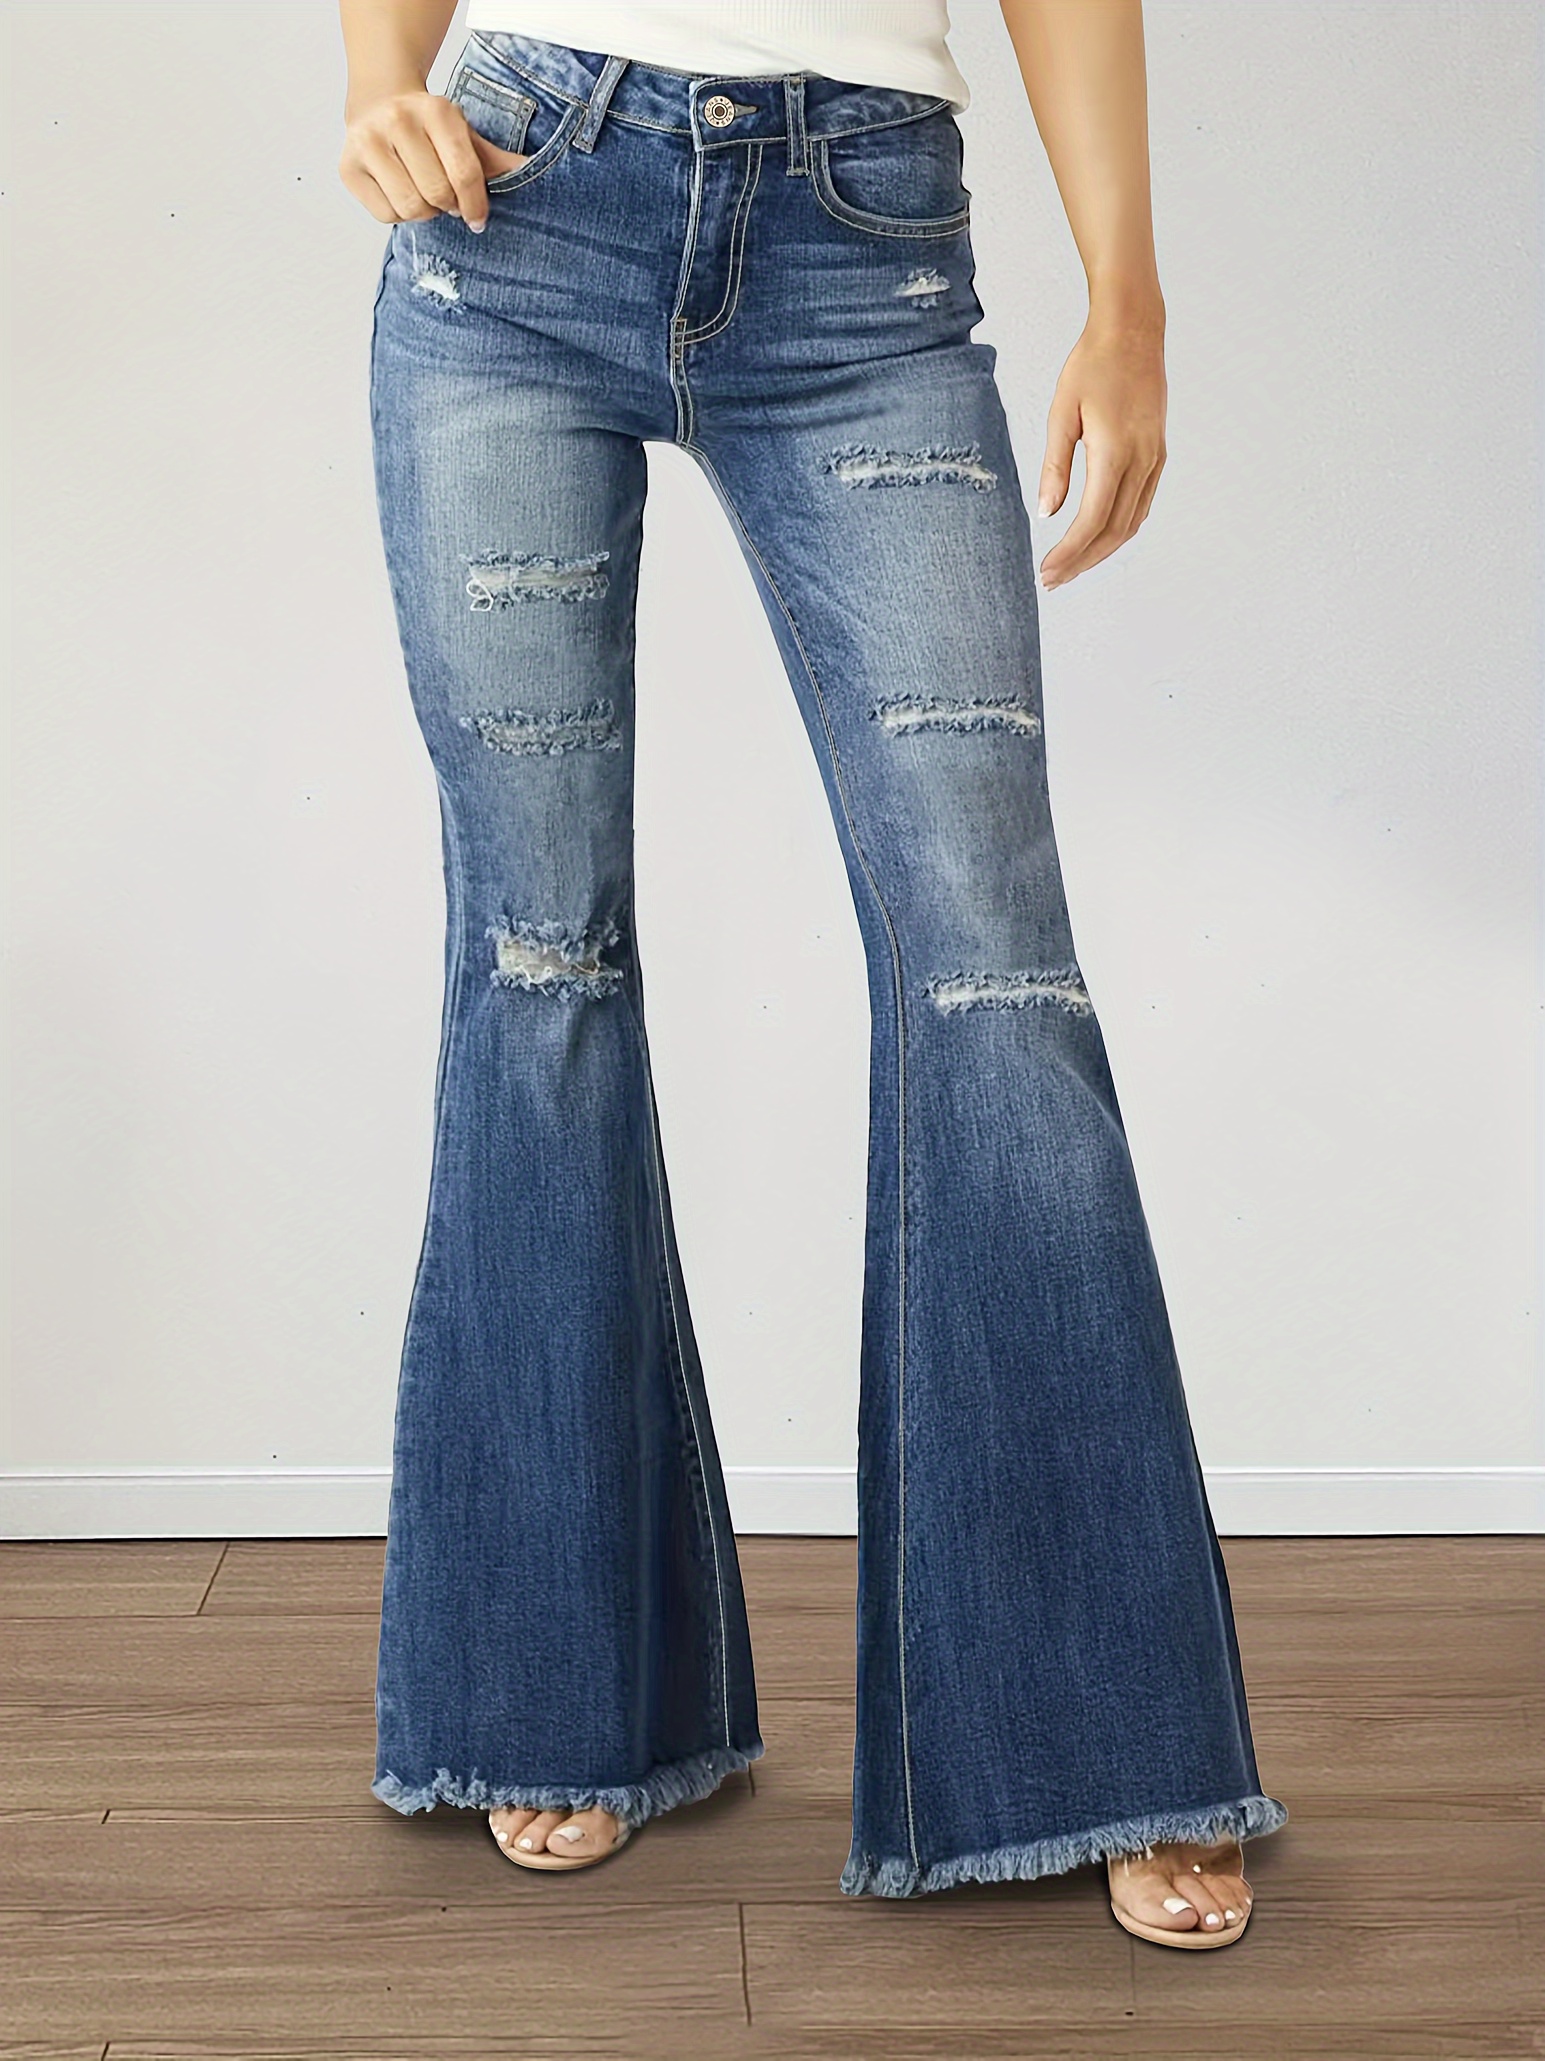 Bell Bottom Jeans For Women High Waist Jeans Button Tassel Pants